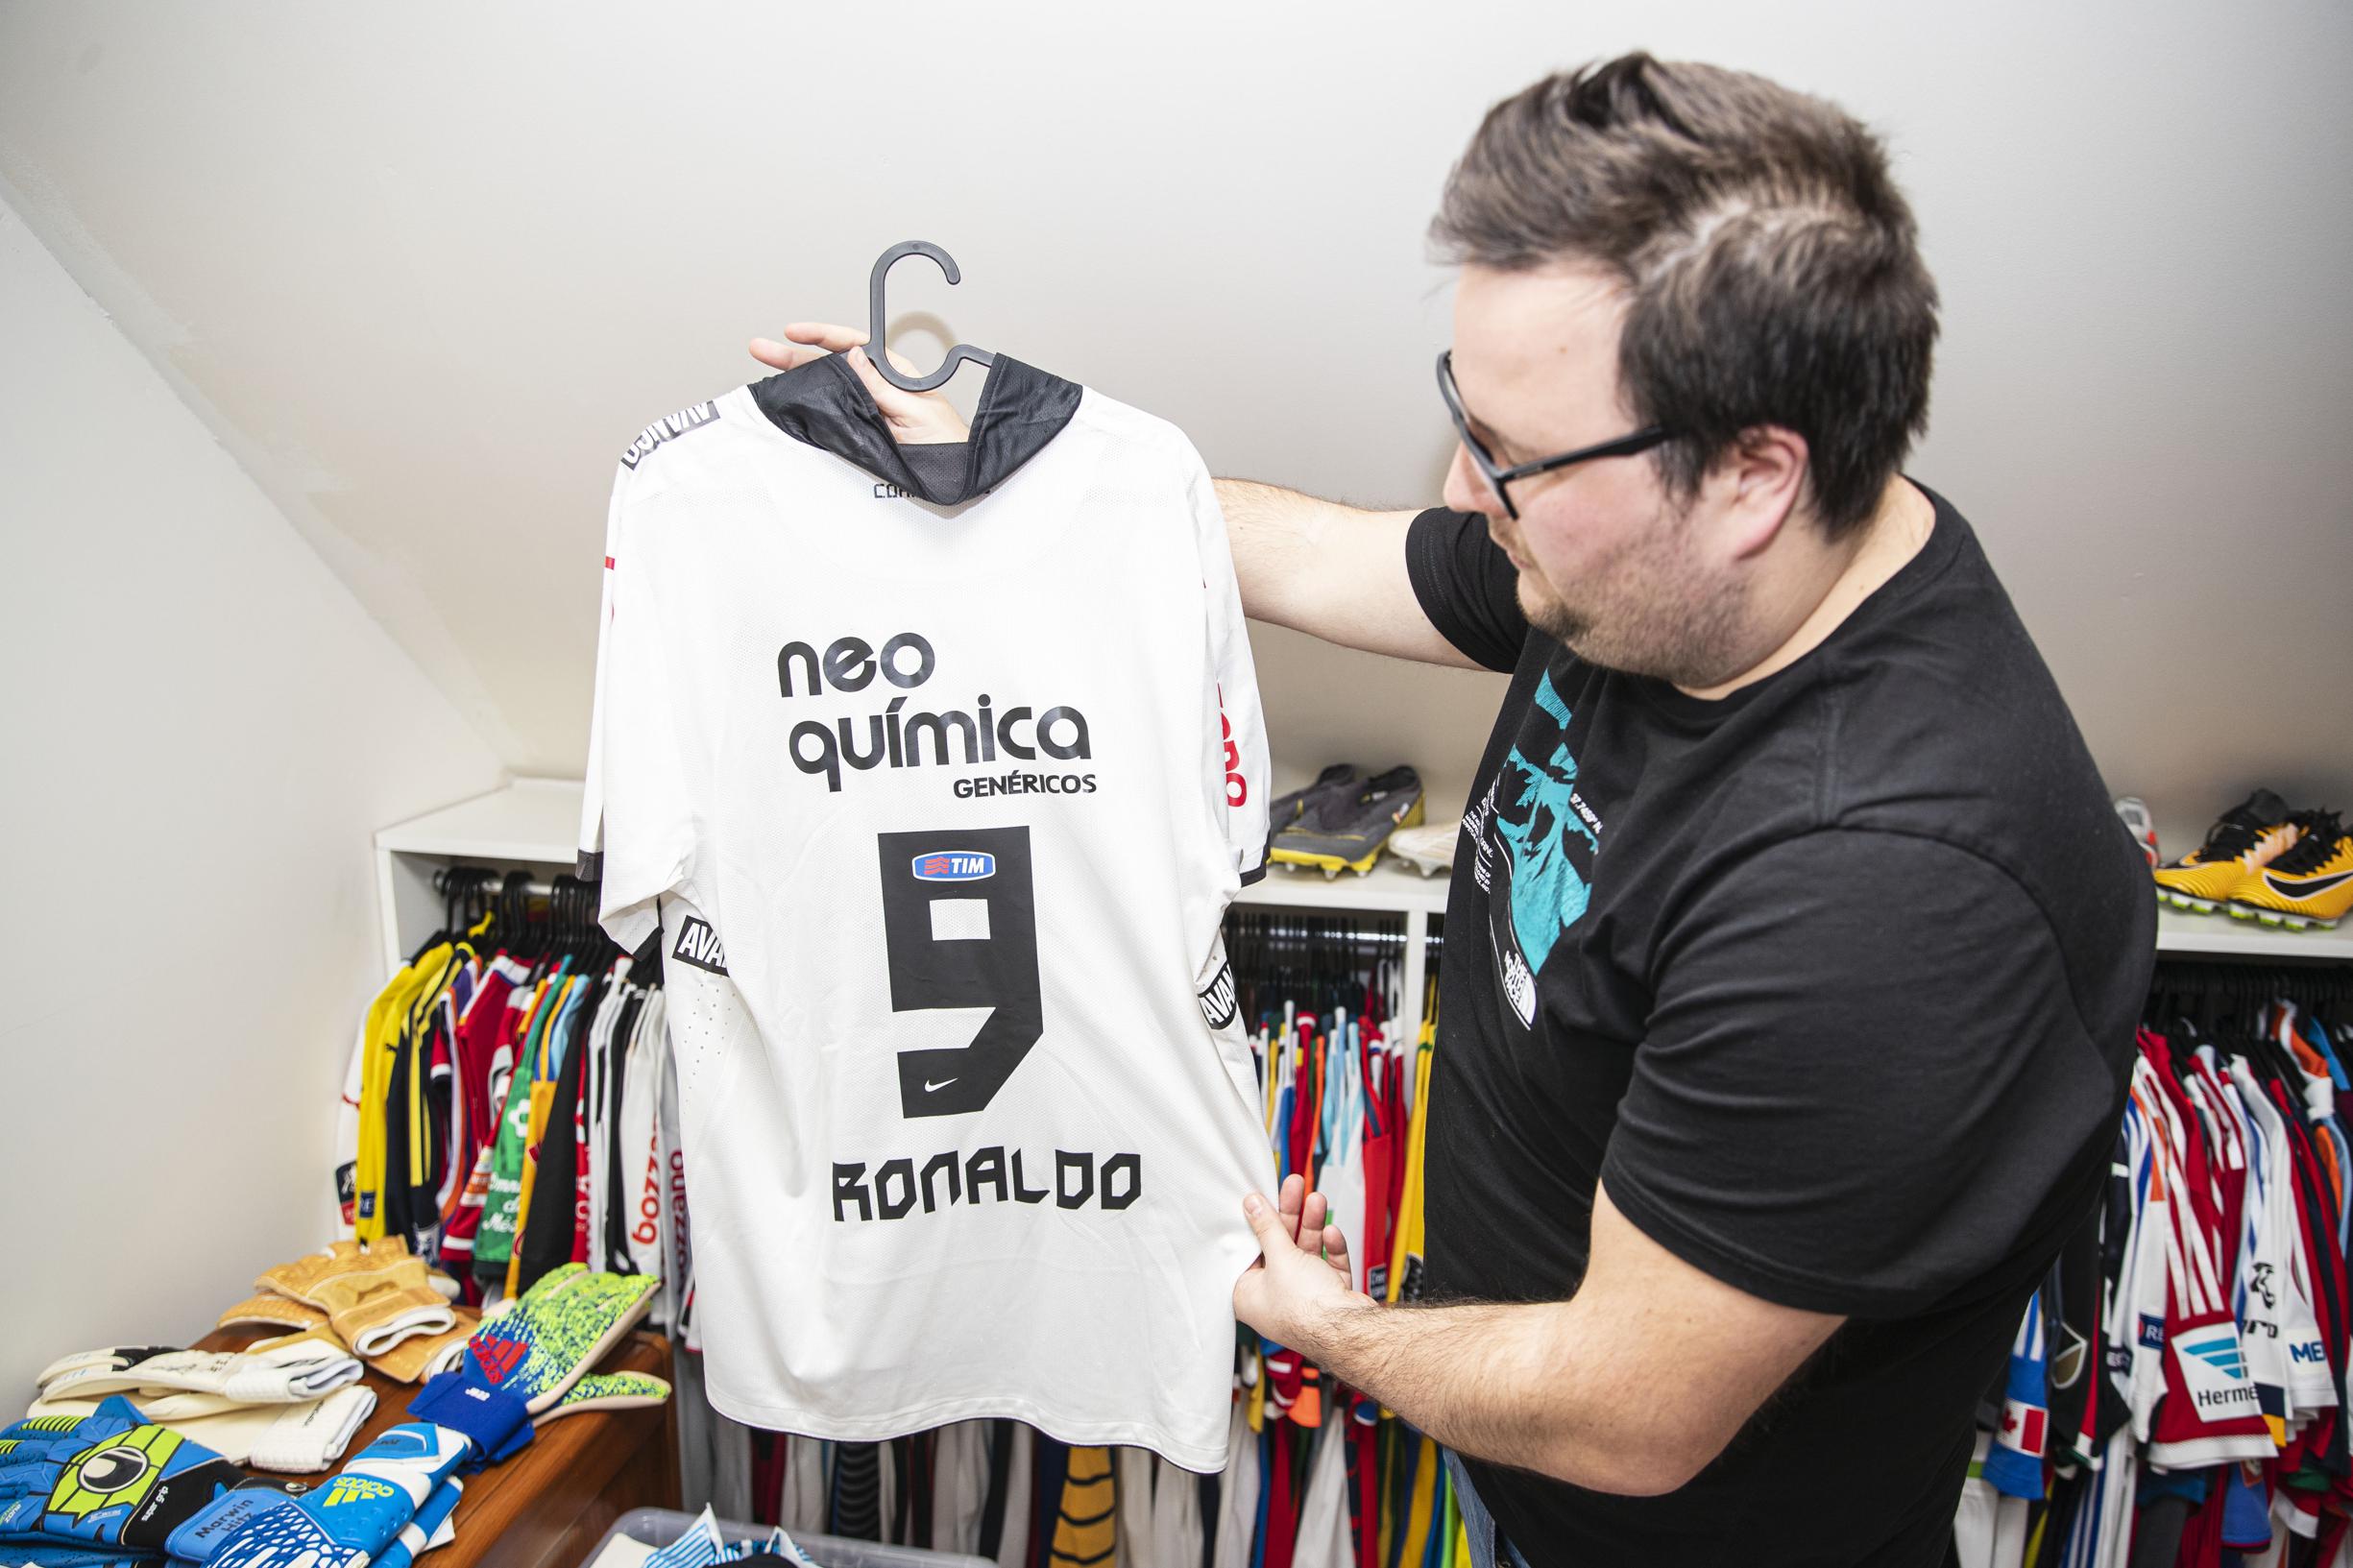 bundel Kreet dreigen Thijs uit Lommel verzamelt oude voetbalshirts om inflatie tegen te gaan:  “Stijgt alleen maar in waarde” (Lommel) | Het Belang van Limburg Mobile